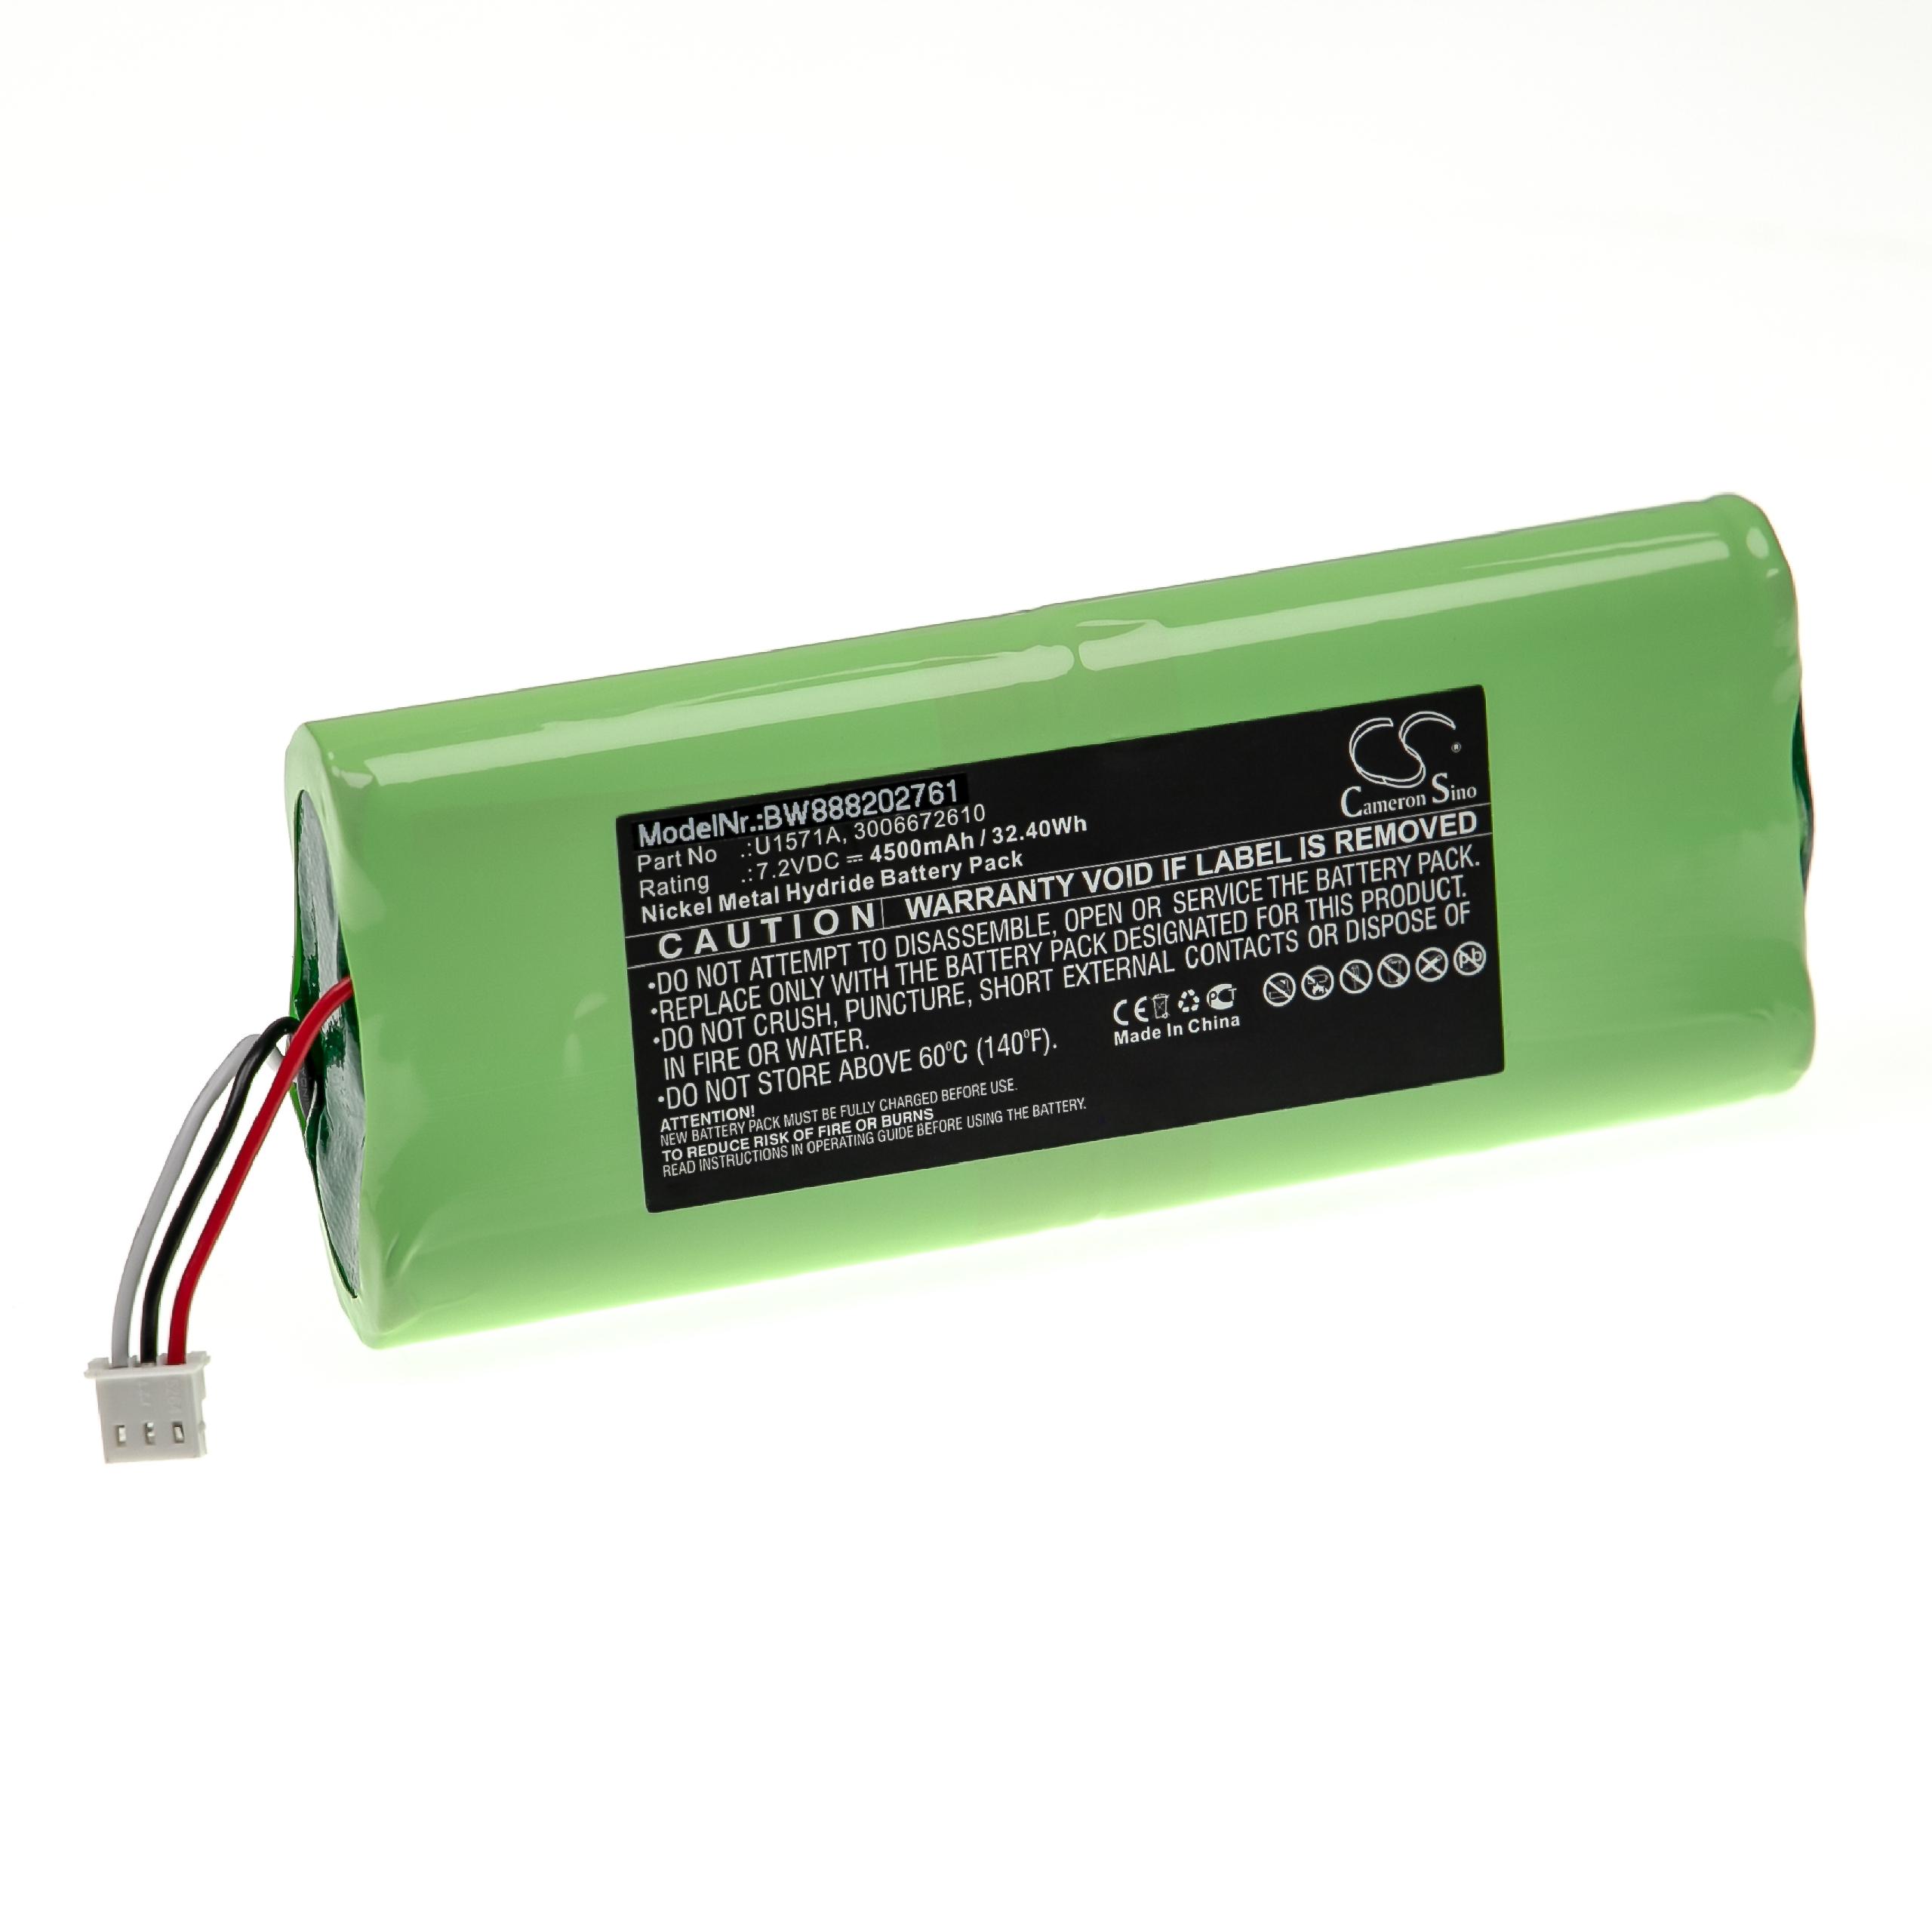 Batería reemplaza Keysight U1571A, 3006672610 para dispositivo medición Keysight - 4500 mAh 7,2 V NiMH